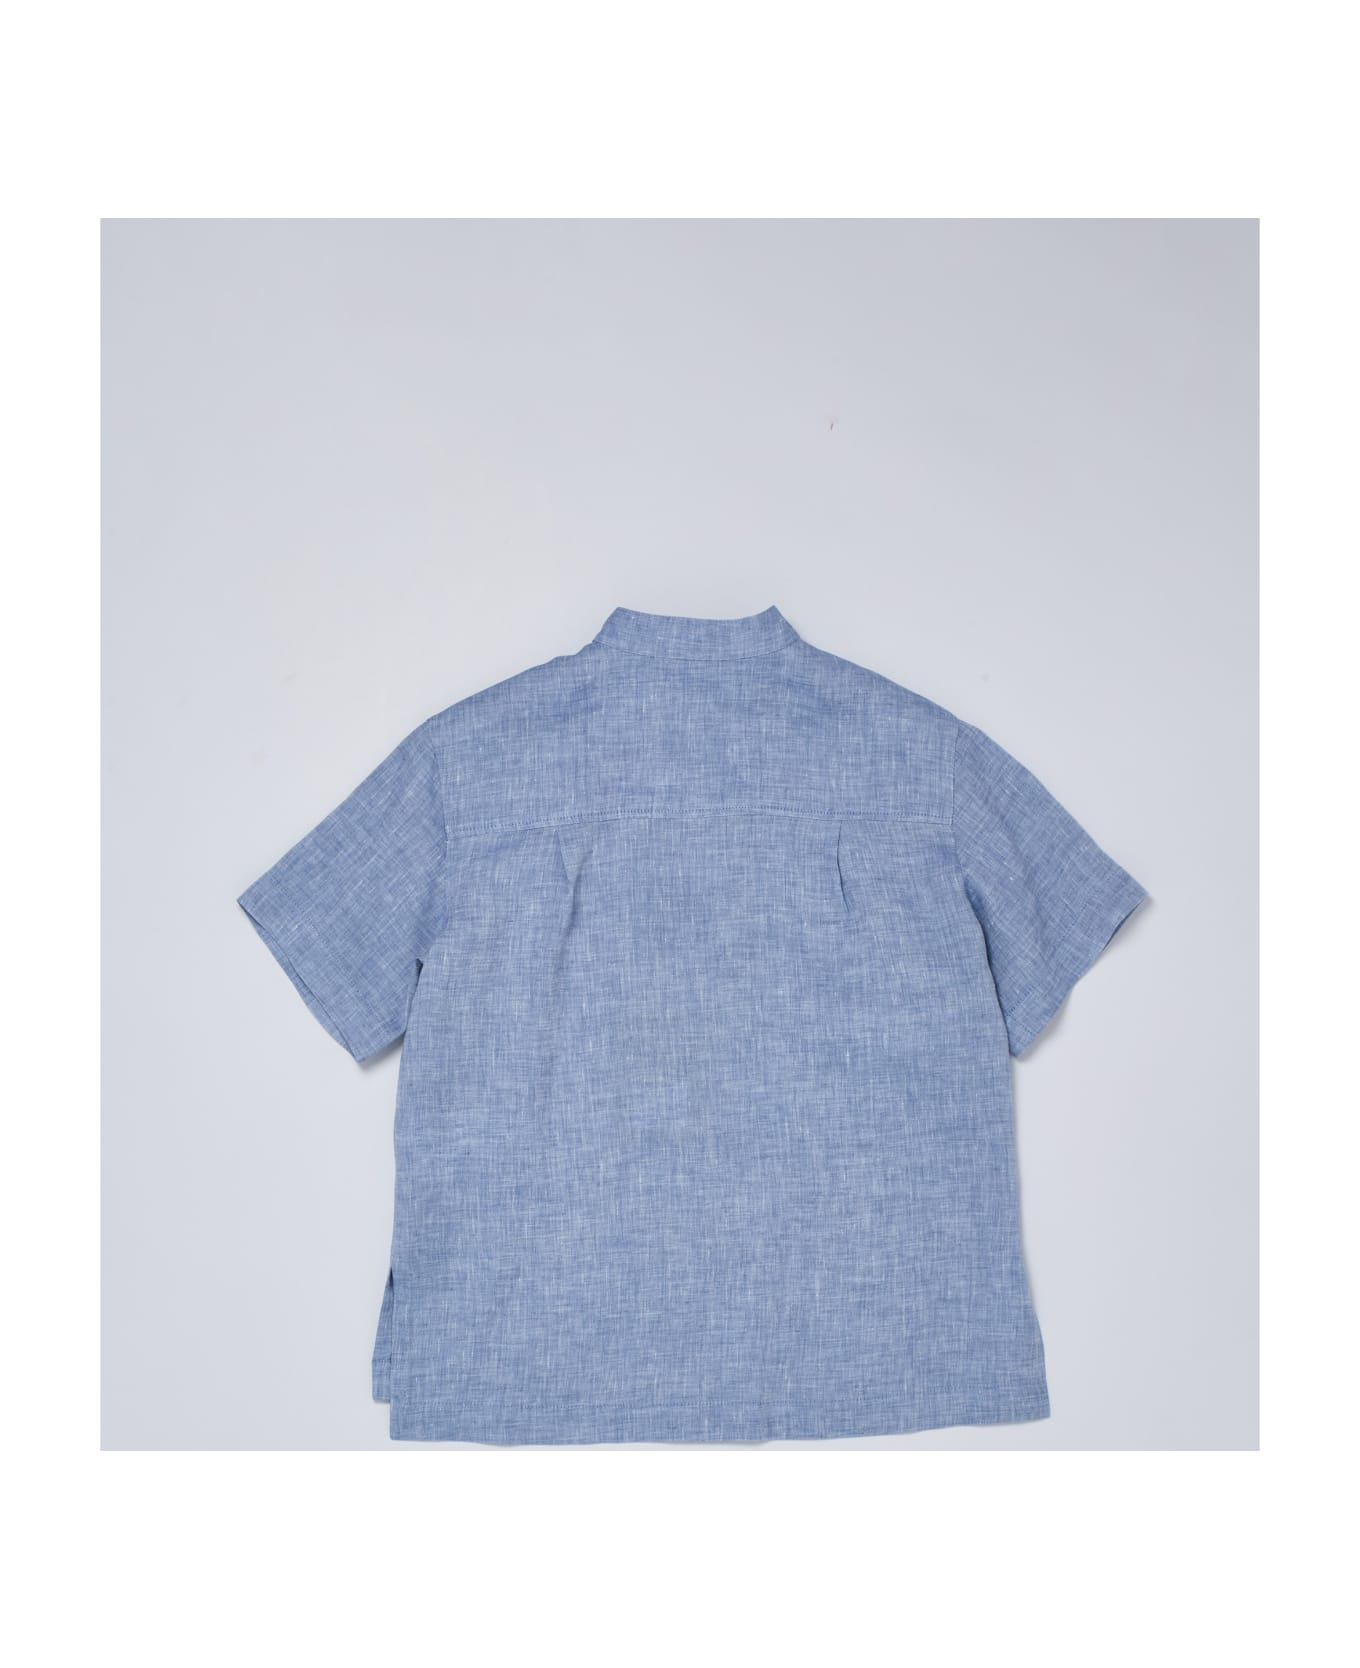 Dolce & Gabbana Shortsleeve Shirt Shirt - CARTA DA ZUCCHERO シャツ